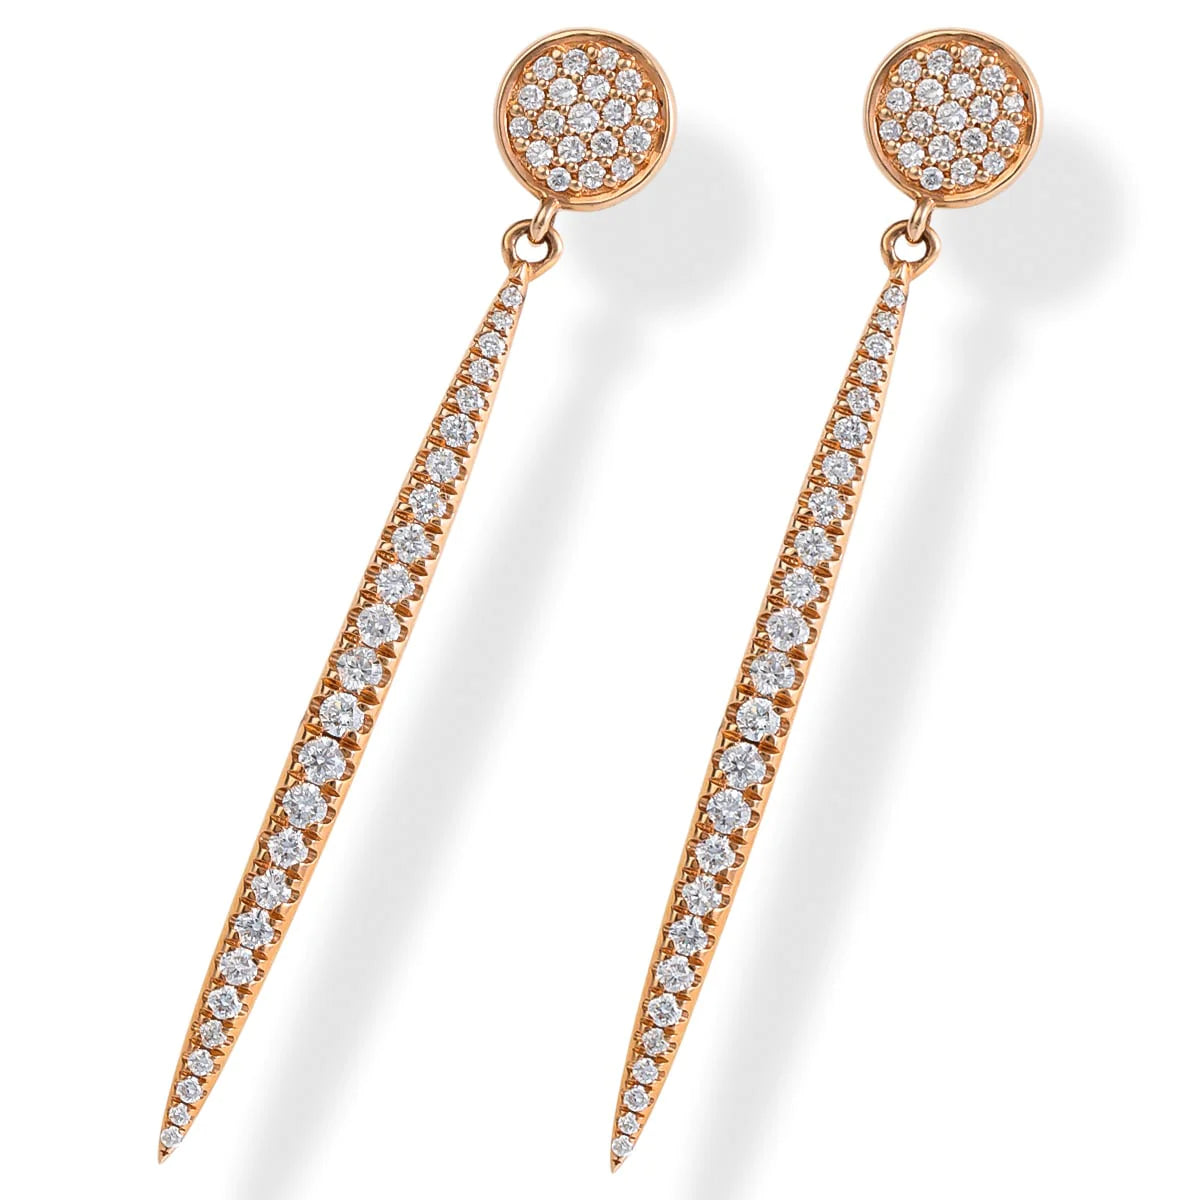 14kt. Rose Gold Diamond Spike Earrings